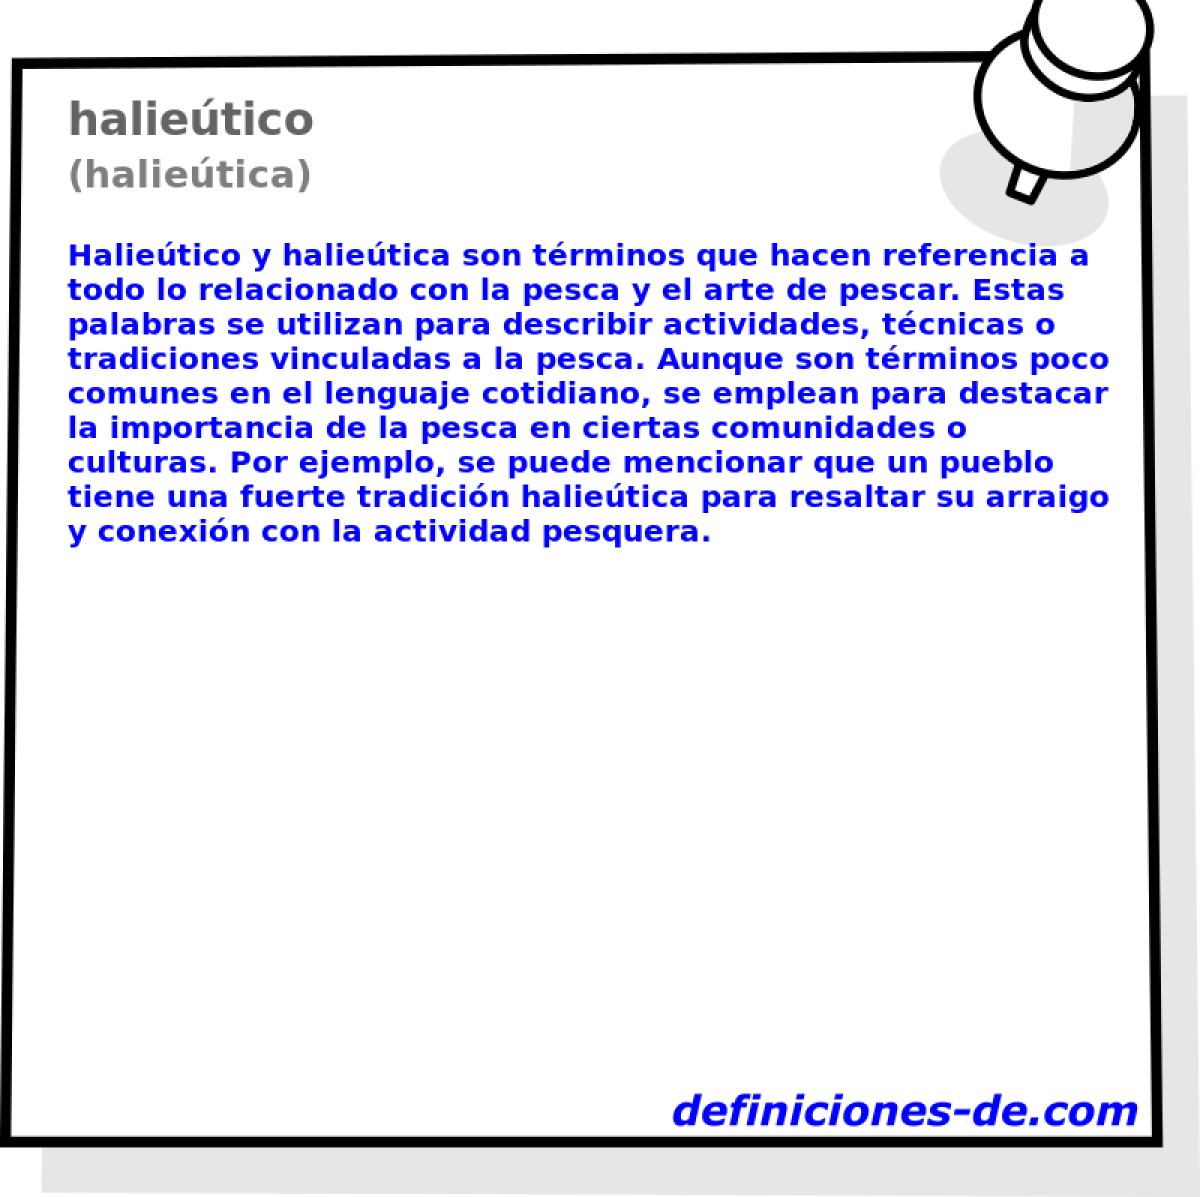 halietico (halietica)